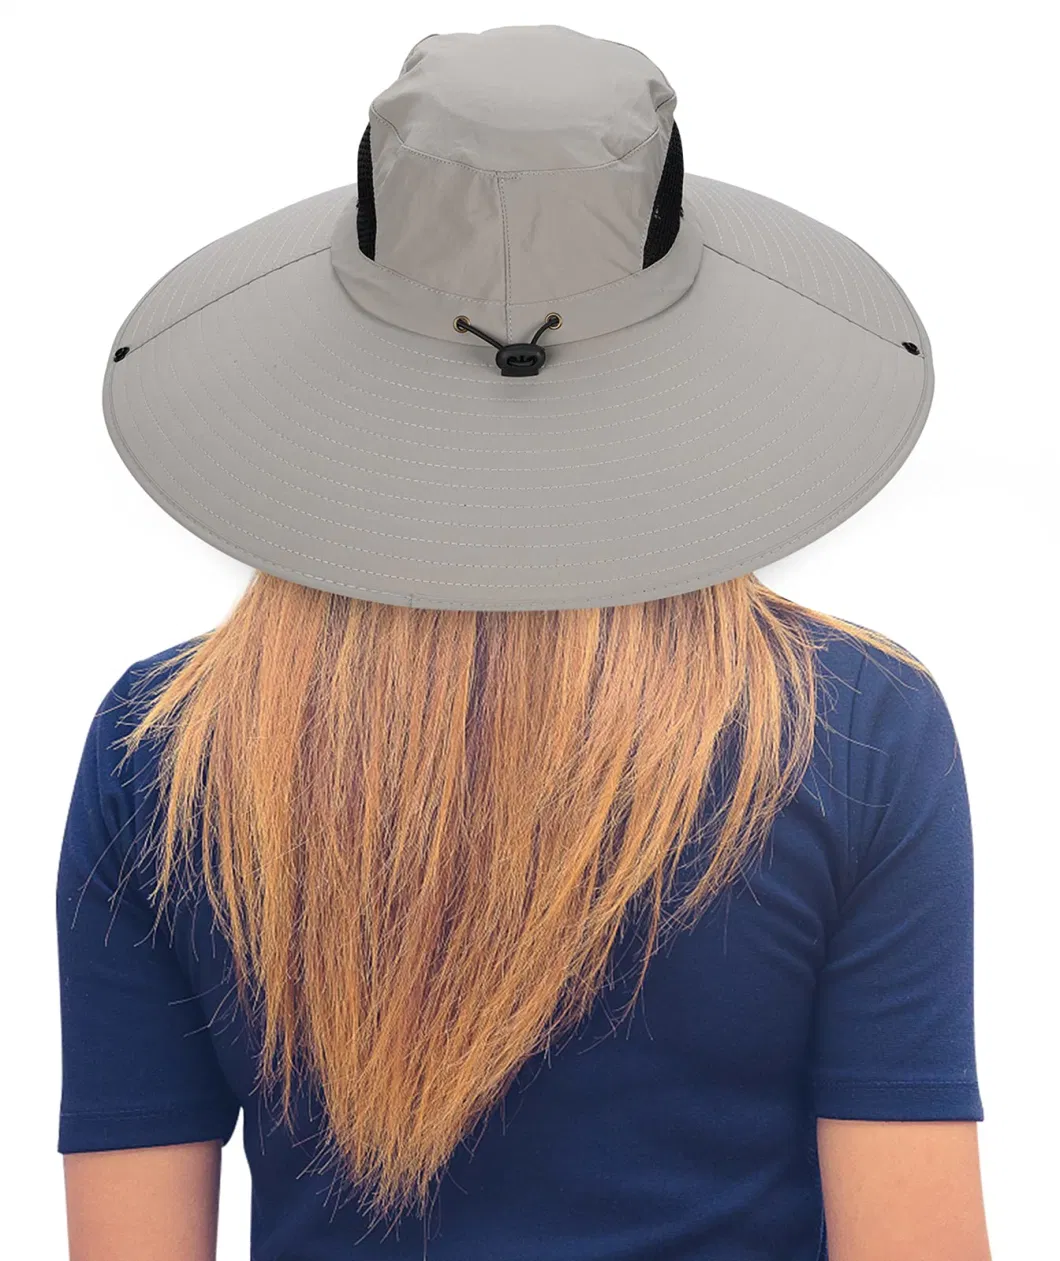 Hot Sale Upf50+ Waterproof Bucket Hat Women Super Wide Brim Sun Hat